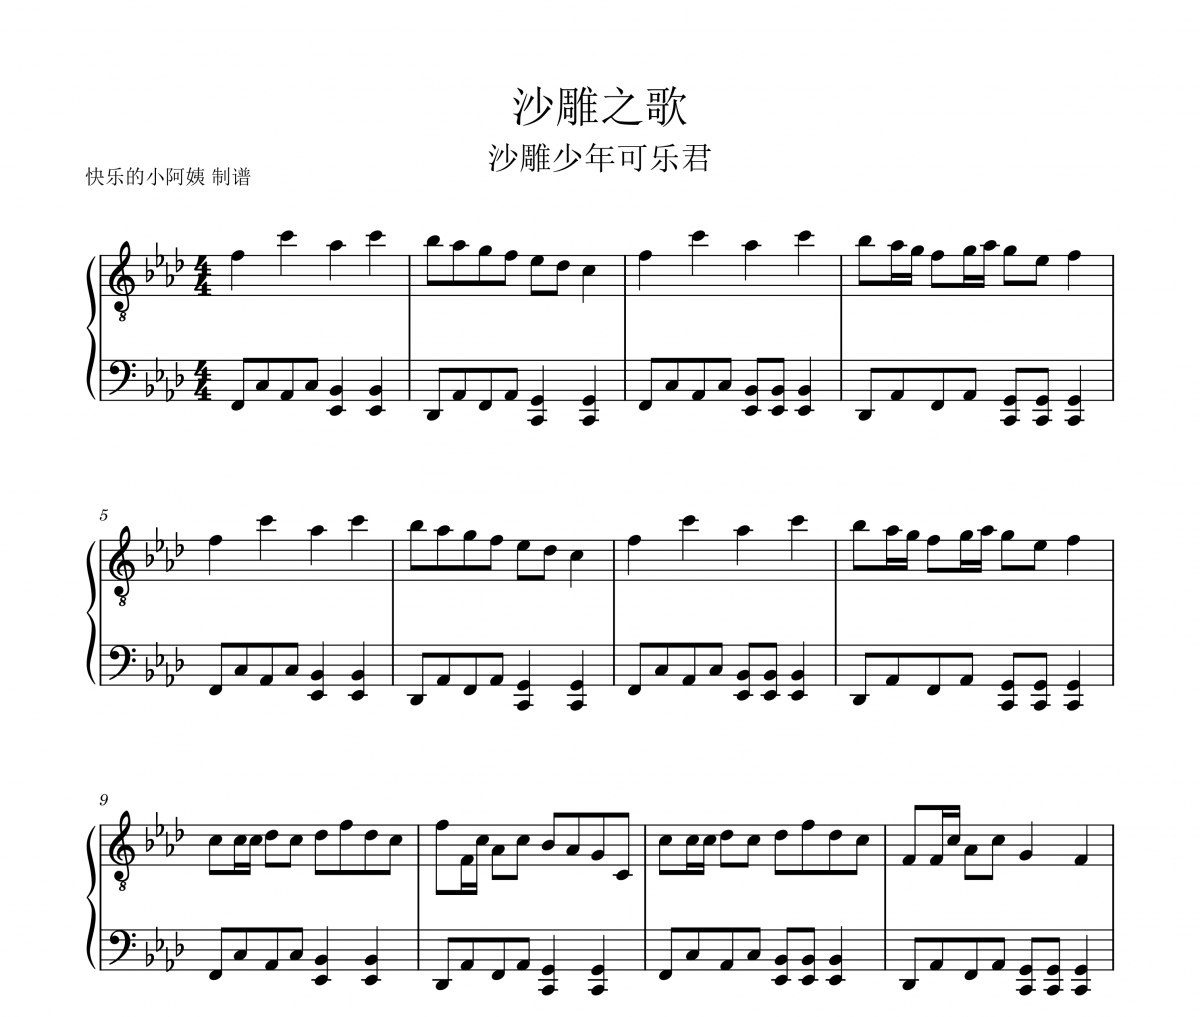 沙雕少年可乐君-沙雕之歌(五线谱+数字双手)五线谱|钢琴谱